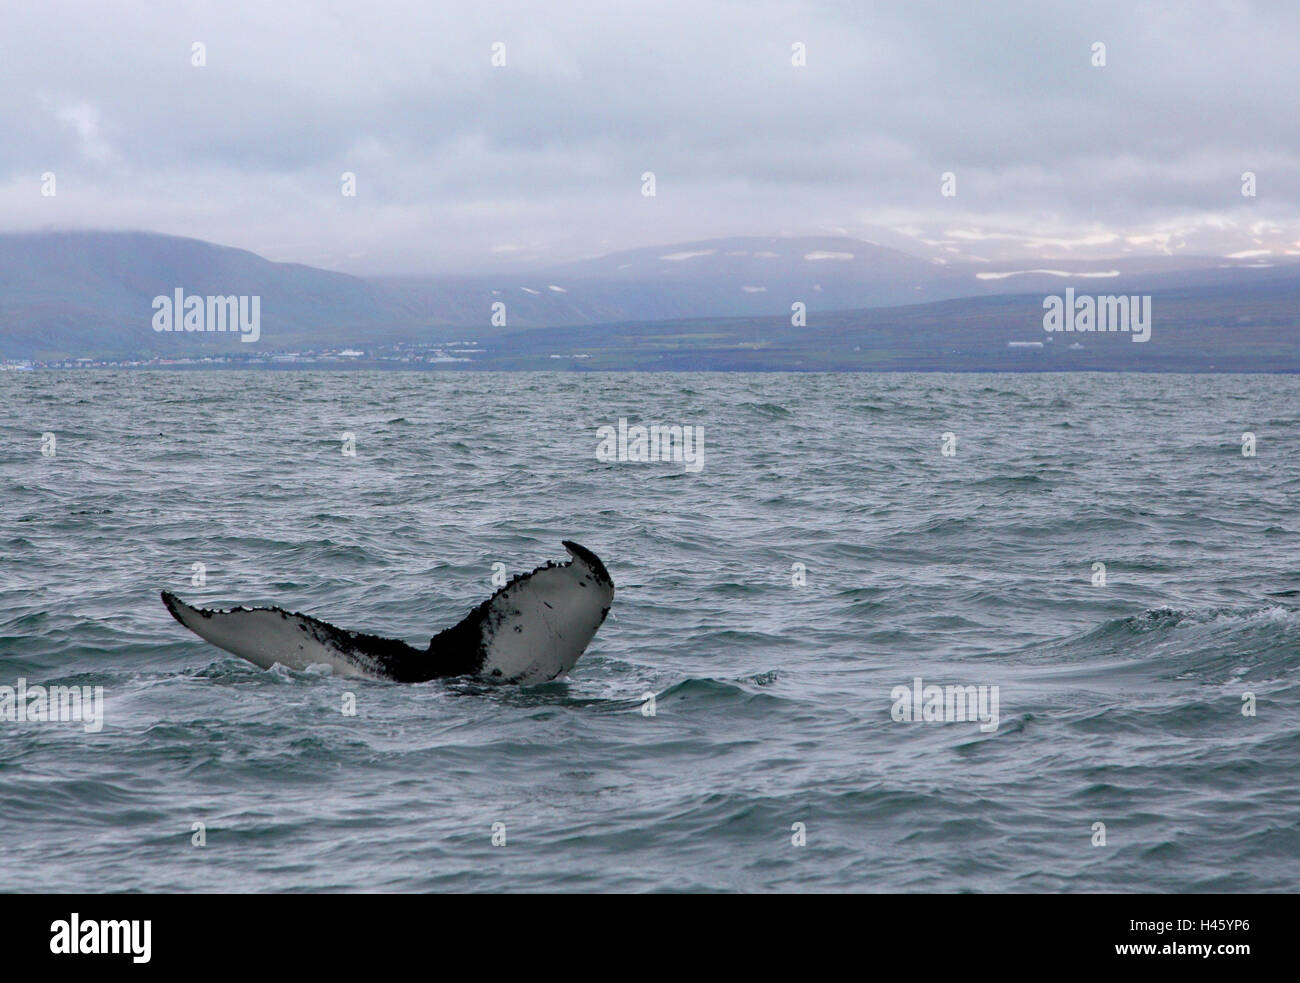 Humpback whale, sea, coast, Iceland, Stock Photo